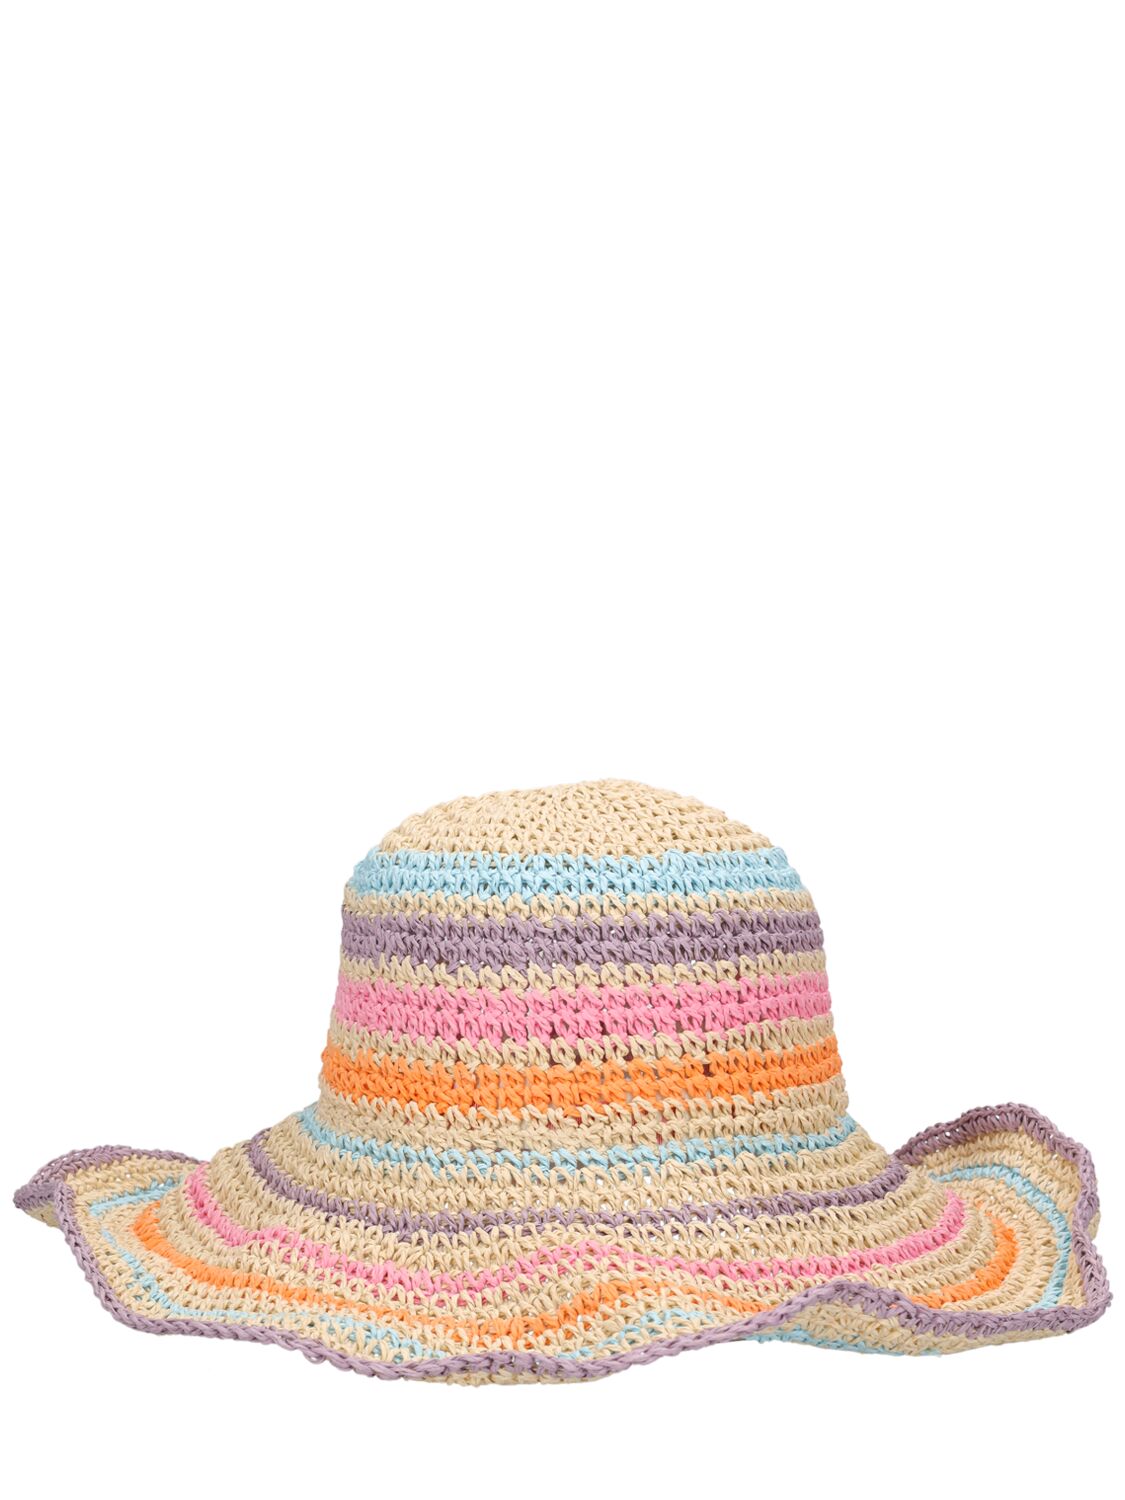 Molo Babies' Straw Hat In Multi